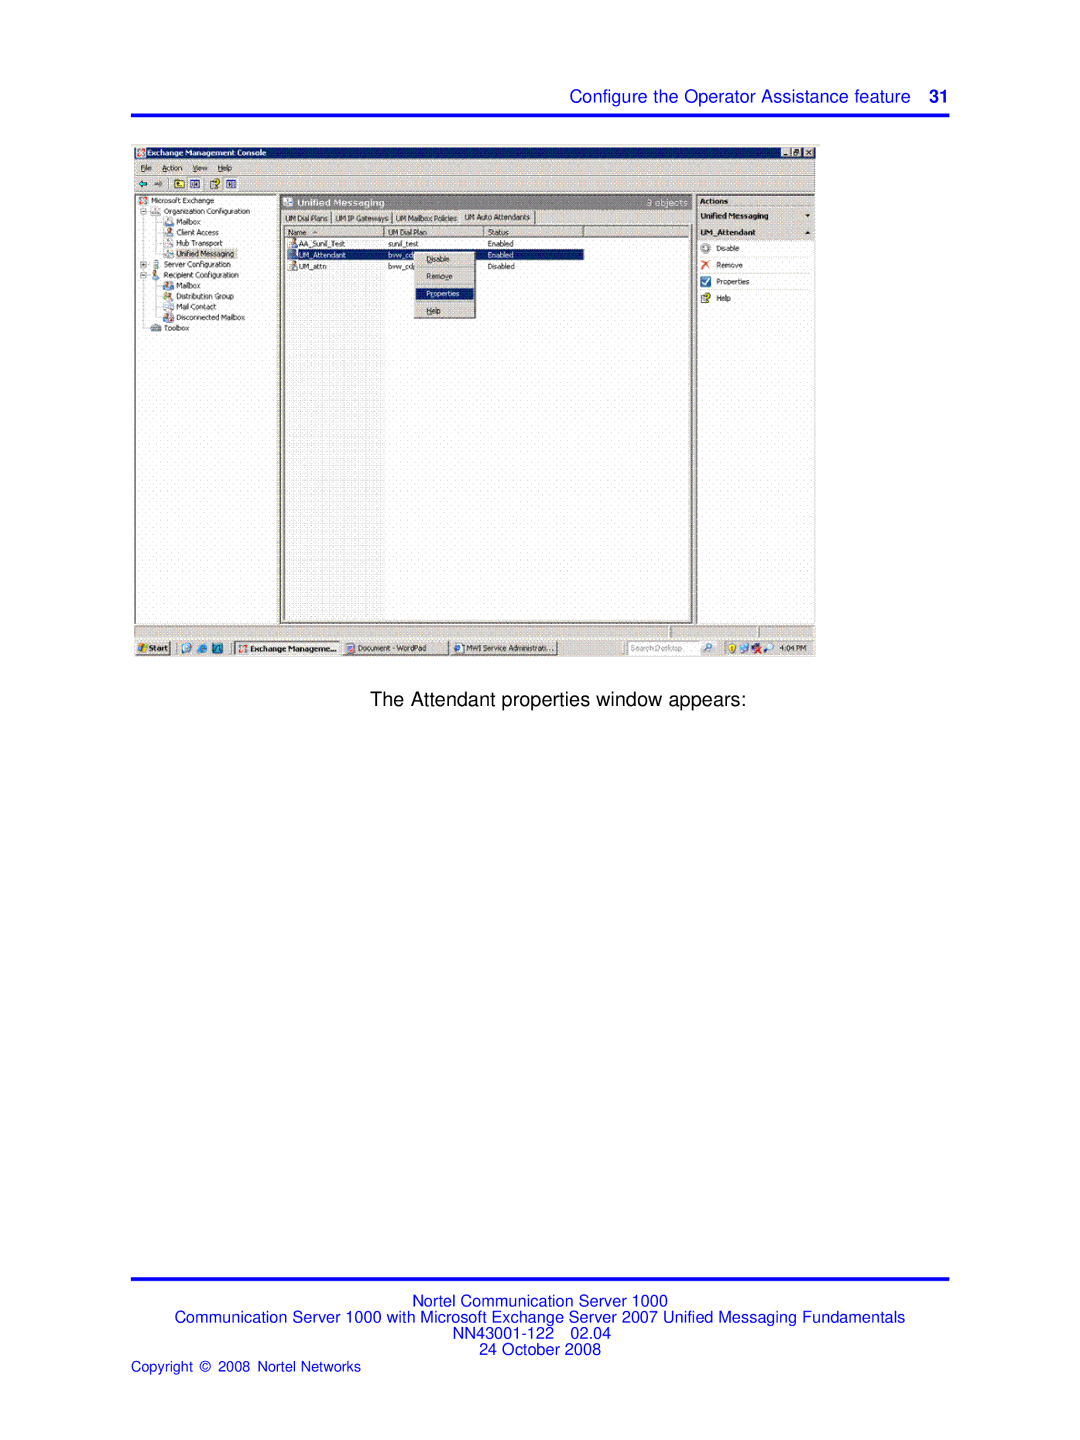 Nortel Networks NN43001-122 manual Attendant properties window appears 